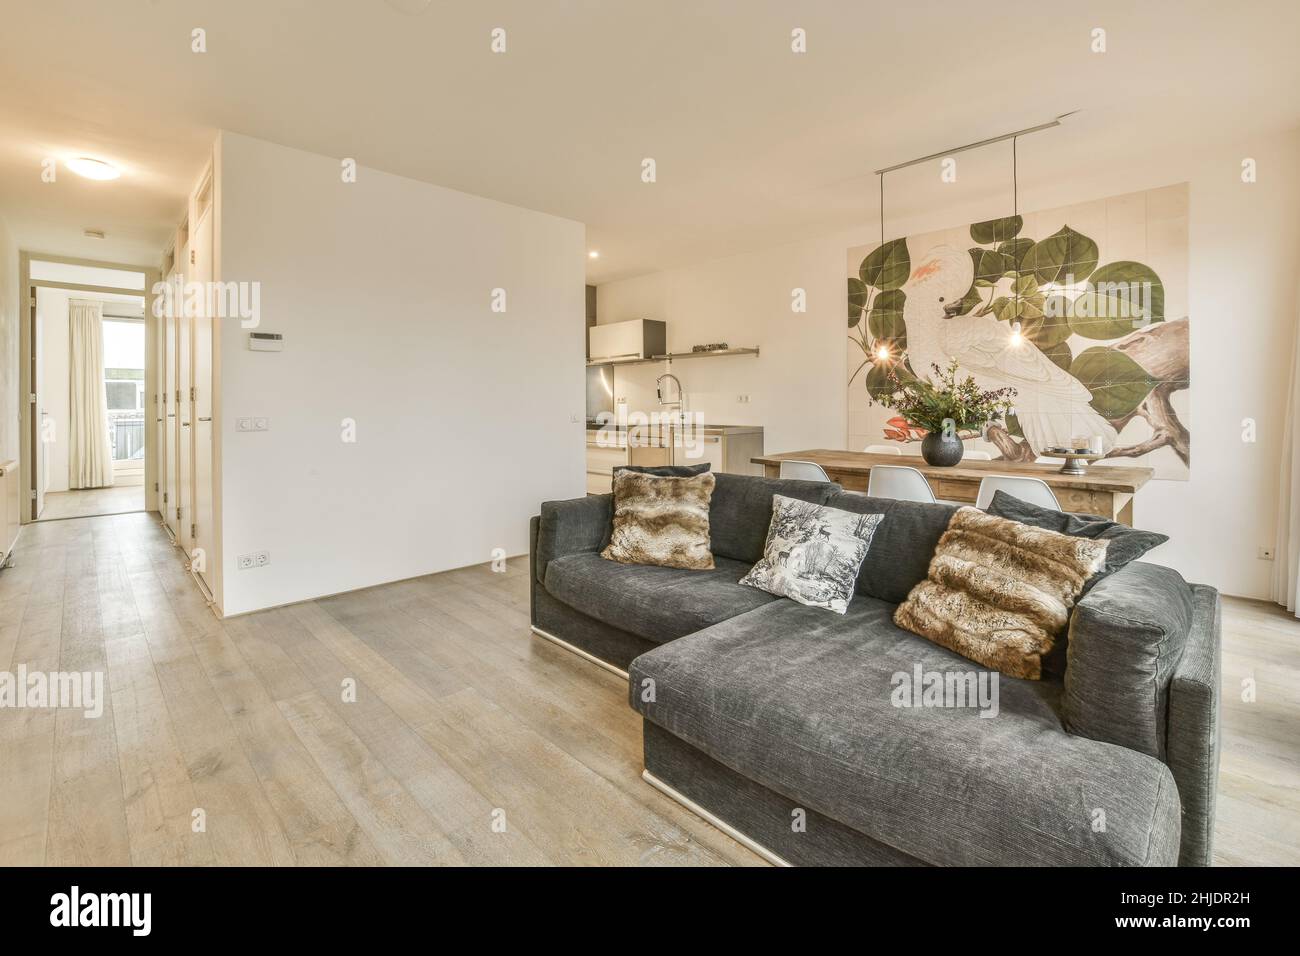 Bellissimo soggiorno interno con pavimenti in legno Foto Stock